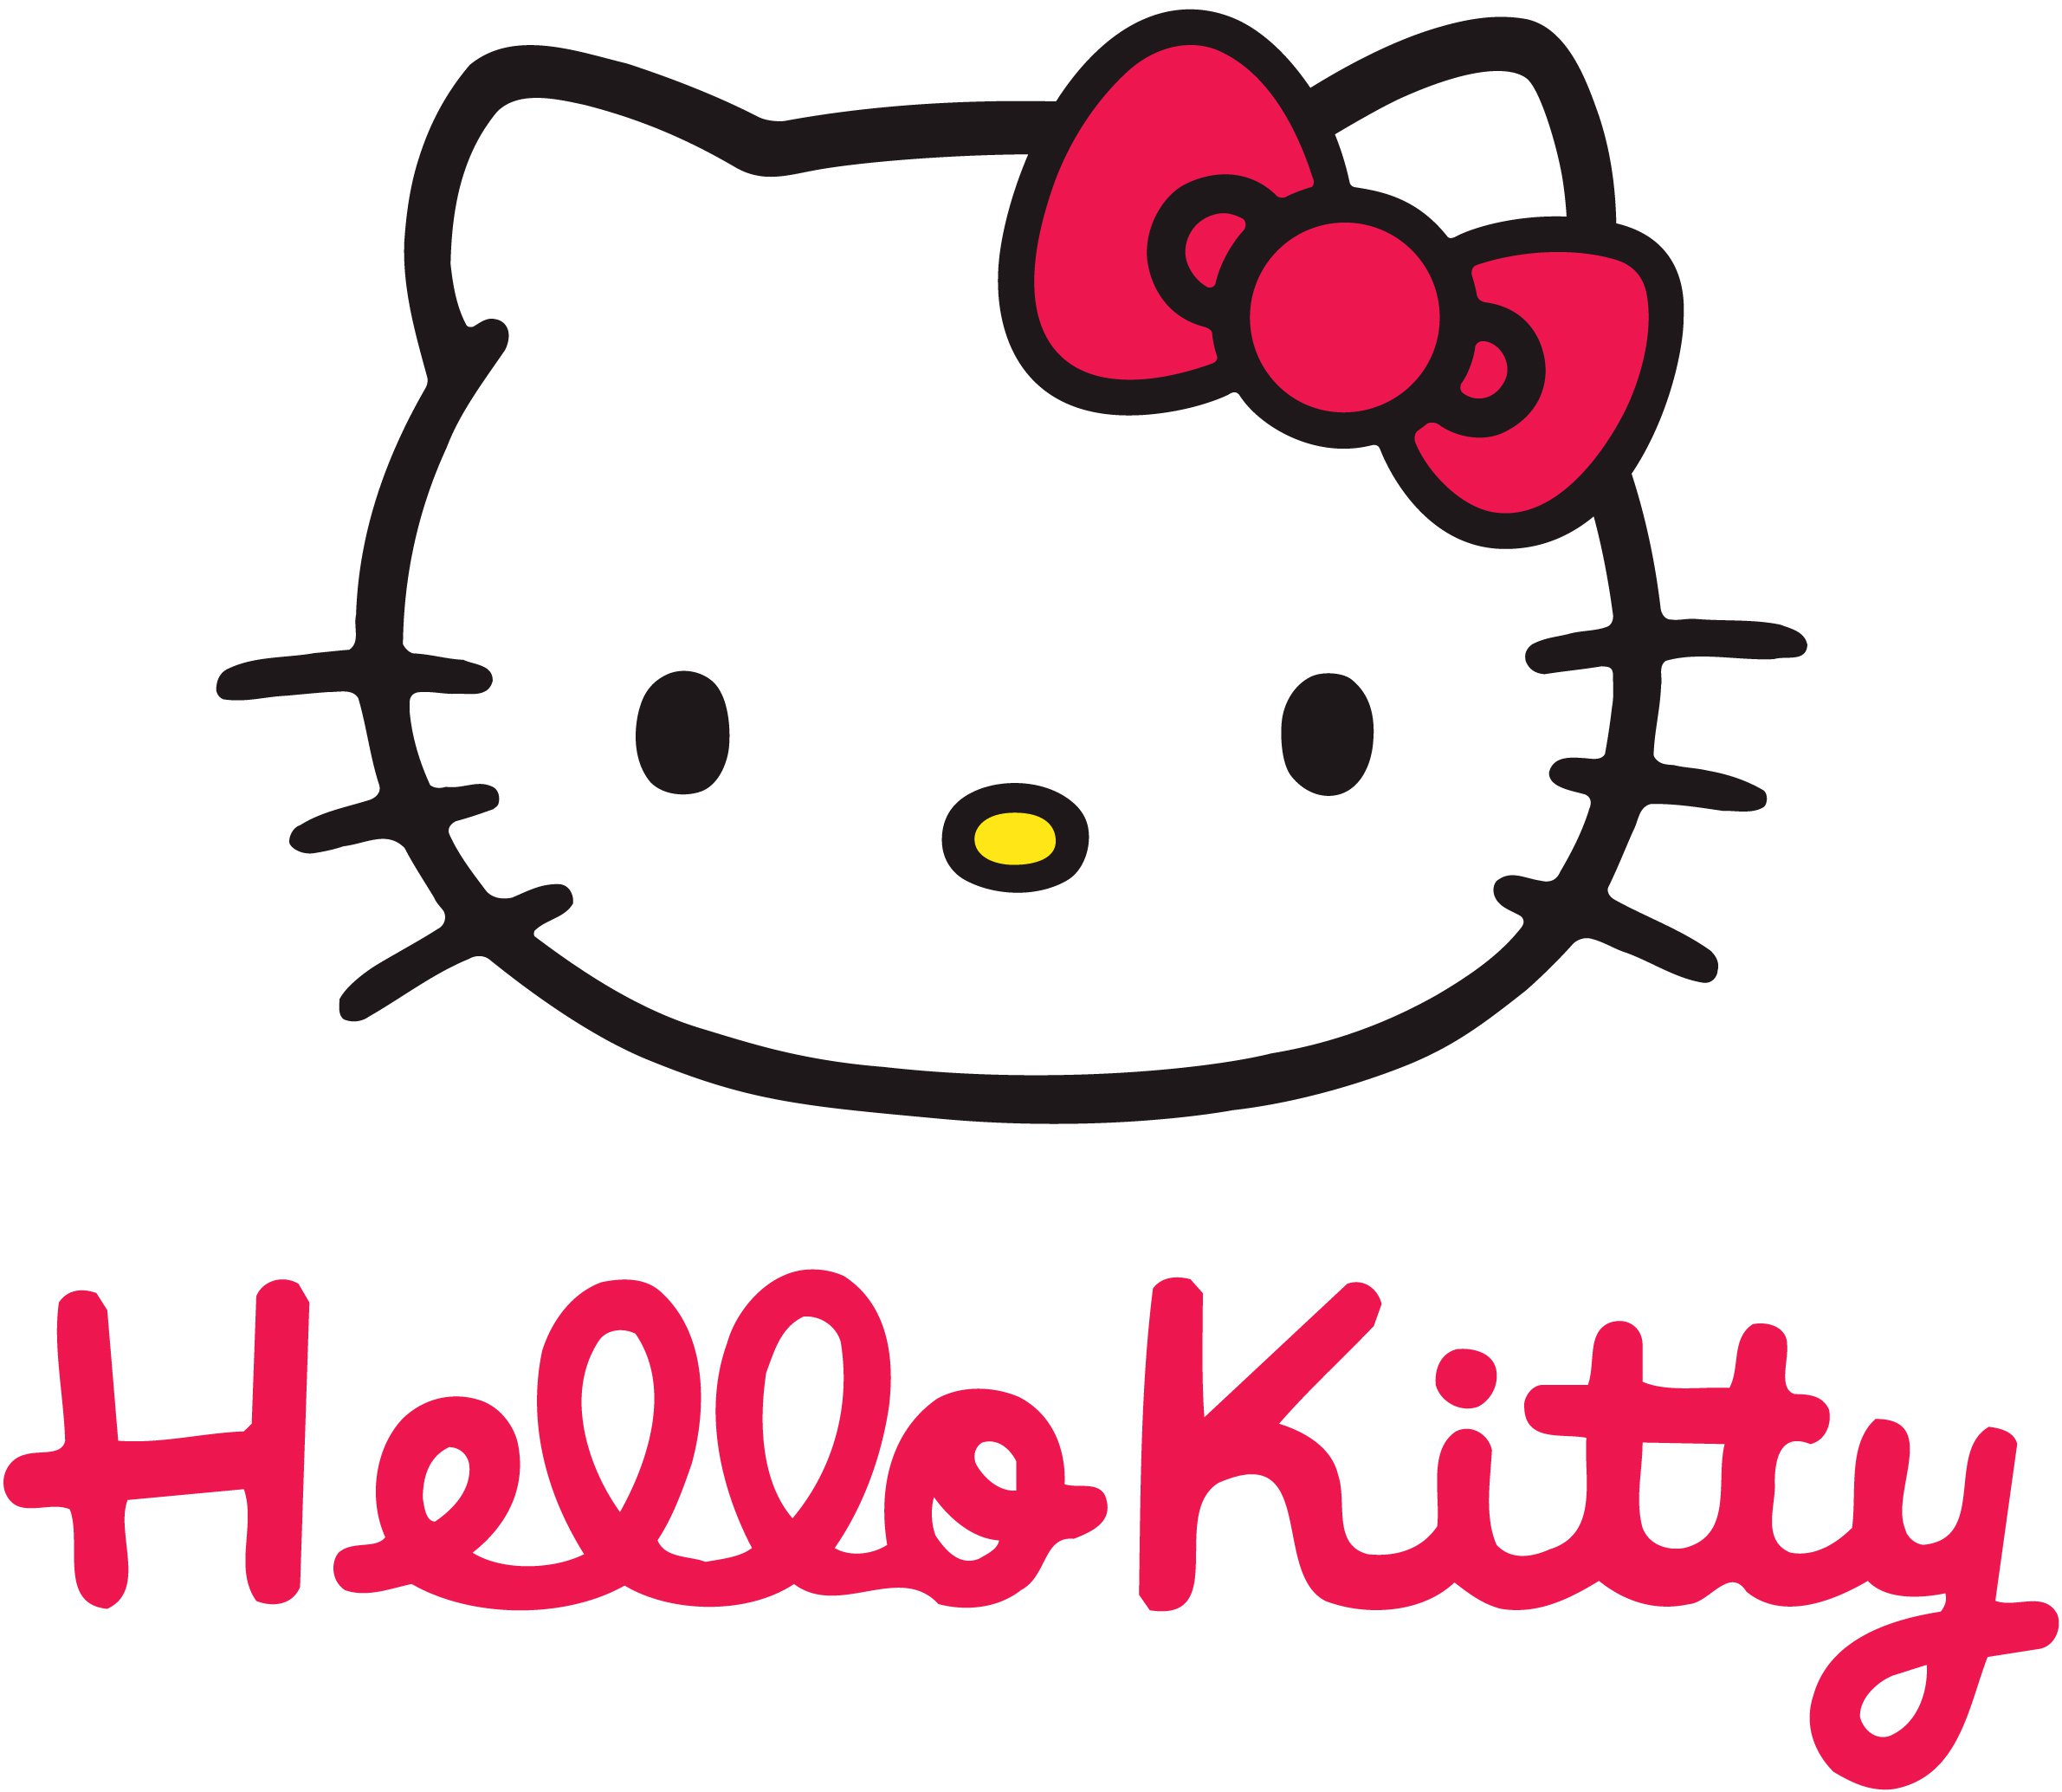 Hello Kitty: Chào mừng đến với thế giới dễ thương của Hello Kitty! Những bức hình về cô mèo xinh đẹp này sẽ khiến bạn cảm thấy thỏa mãn trí tưởng tượng và đầy niềm vui. Hãy xem ngay nhé!